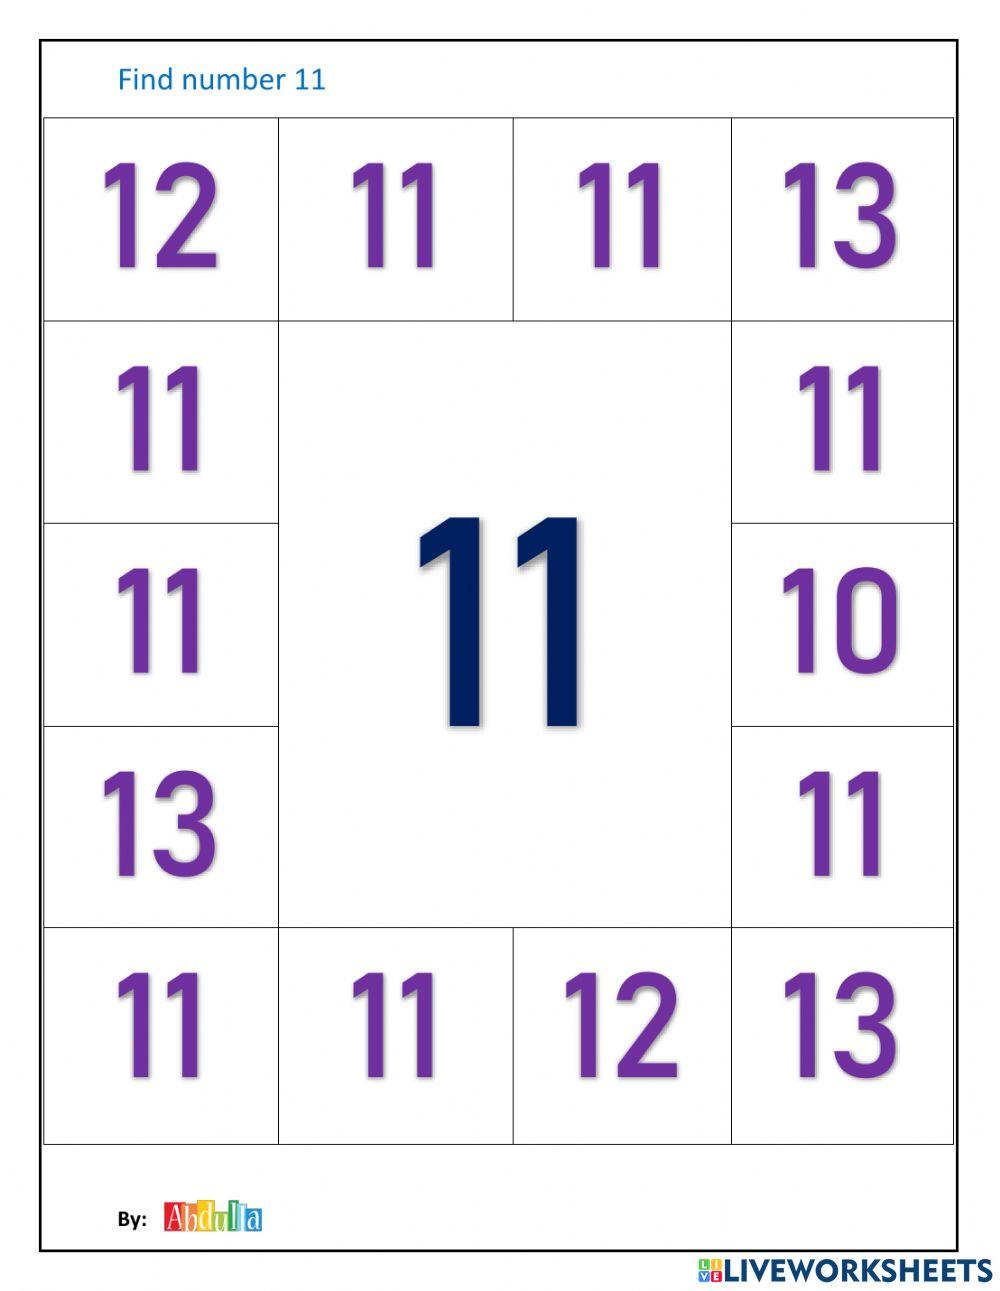 Find number 11